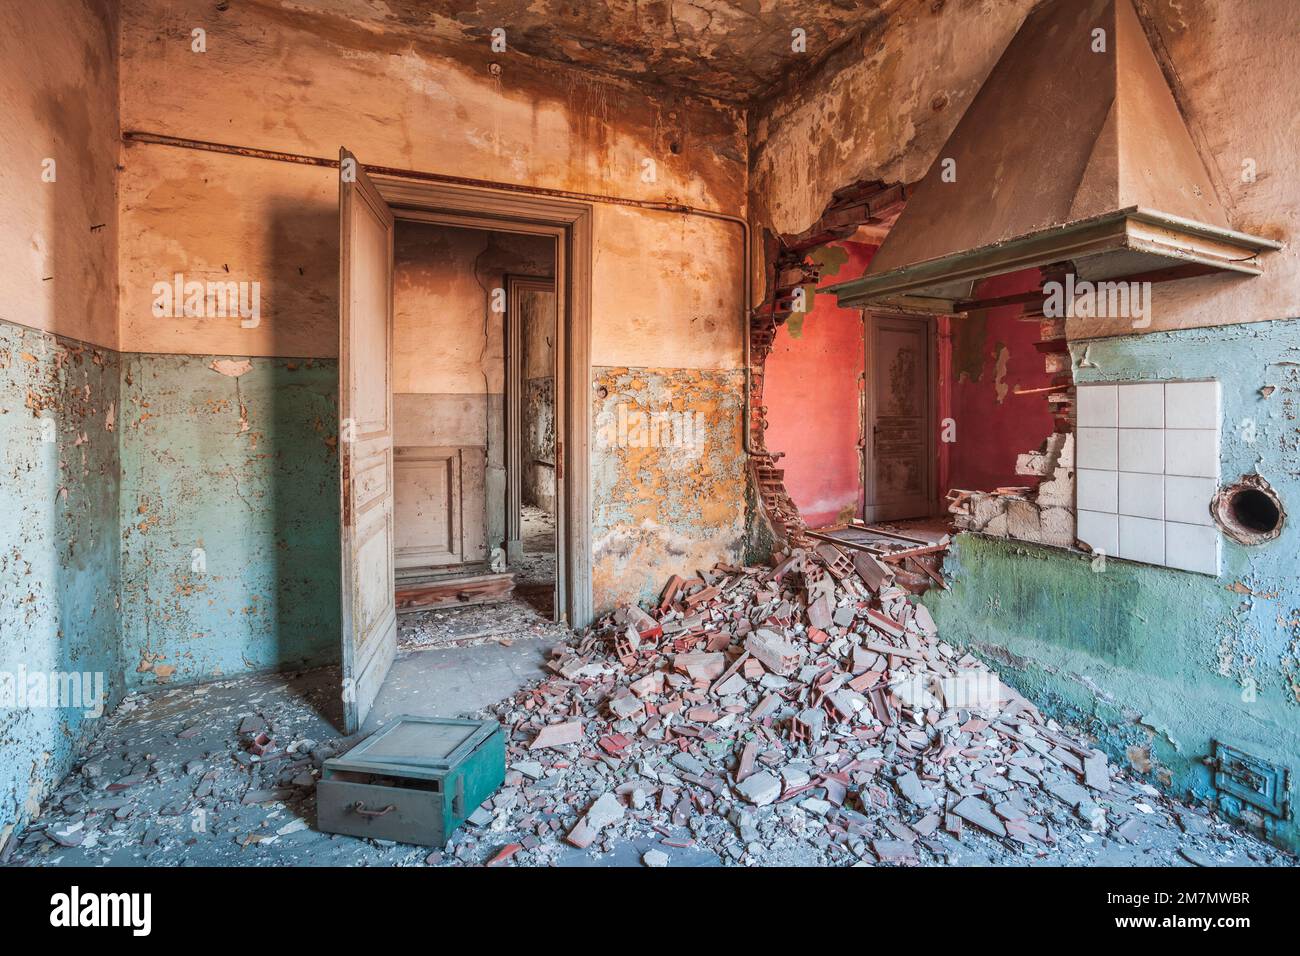 Italia, Veneto, interno di una casa abbandonata con pareti dai colori vivaci Foto Stock